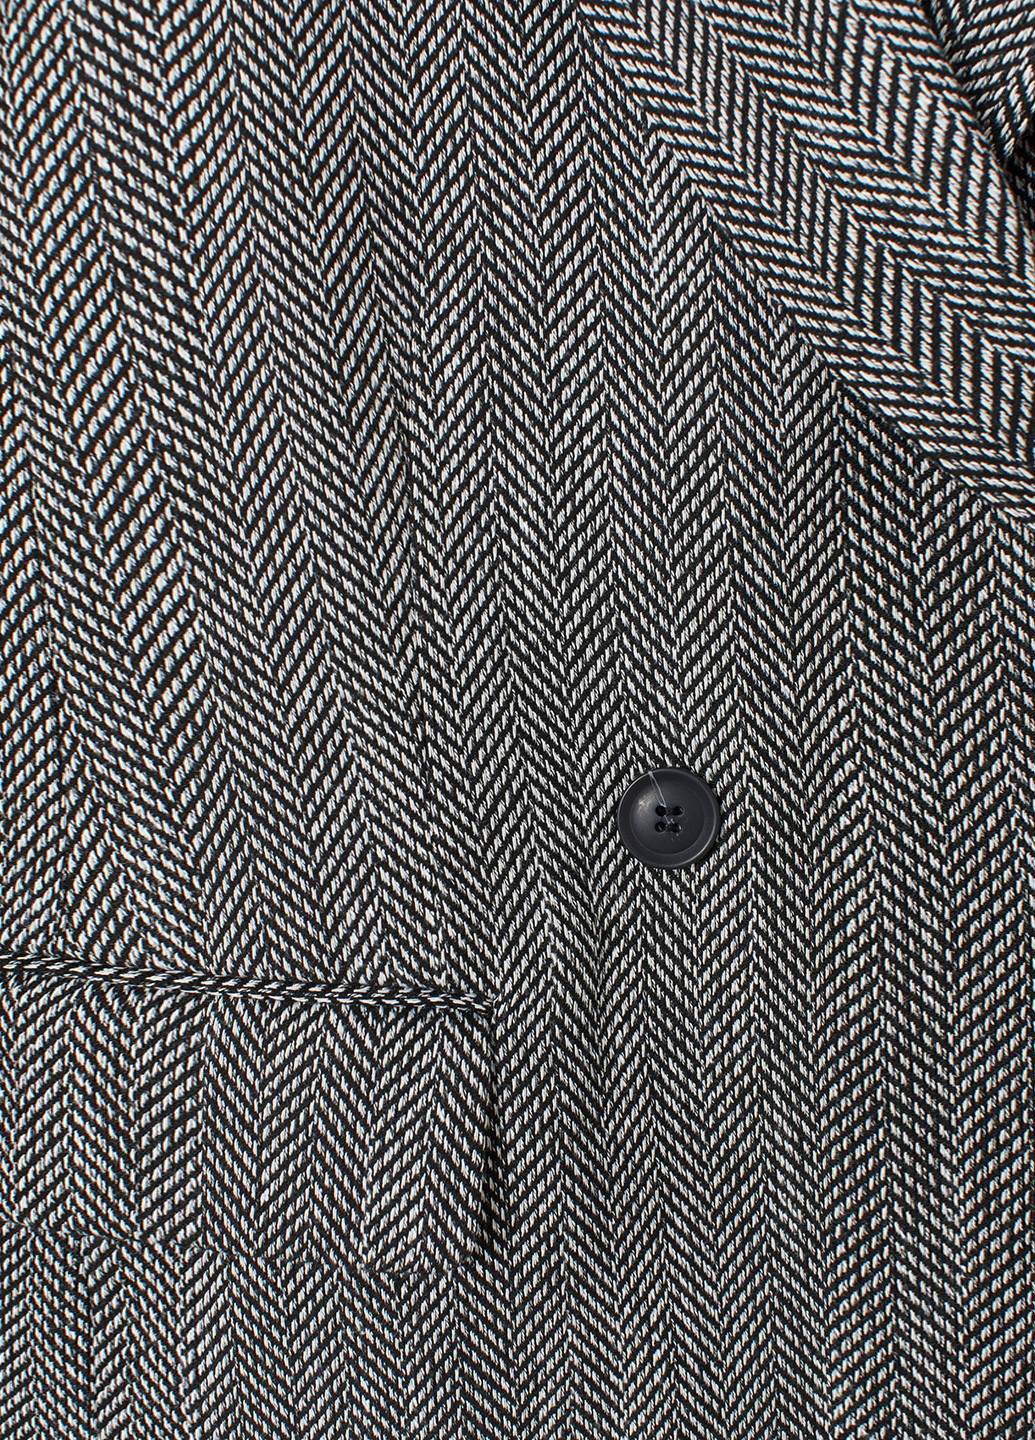 Черно-белый женский жакет H&M геометрический - демисезонный